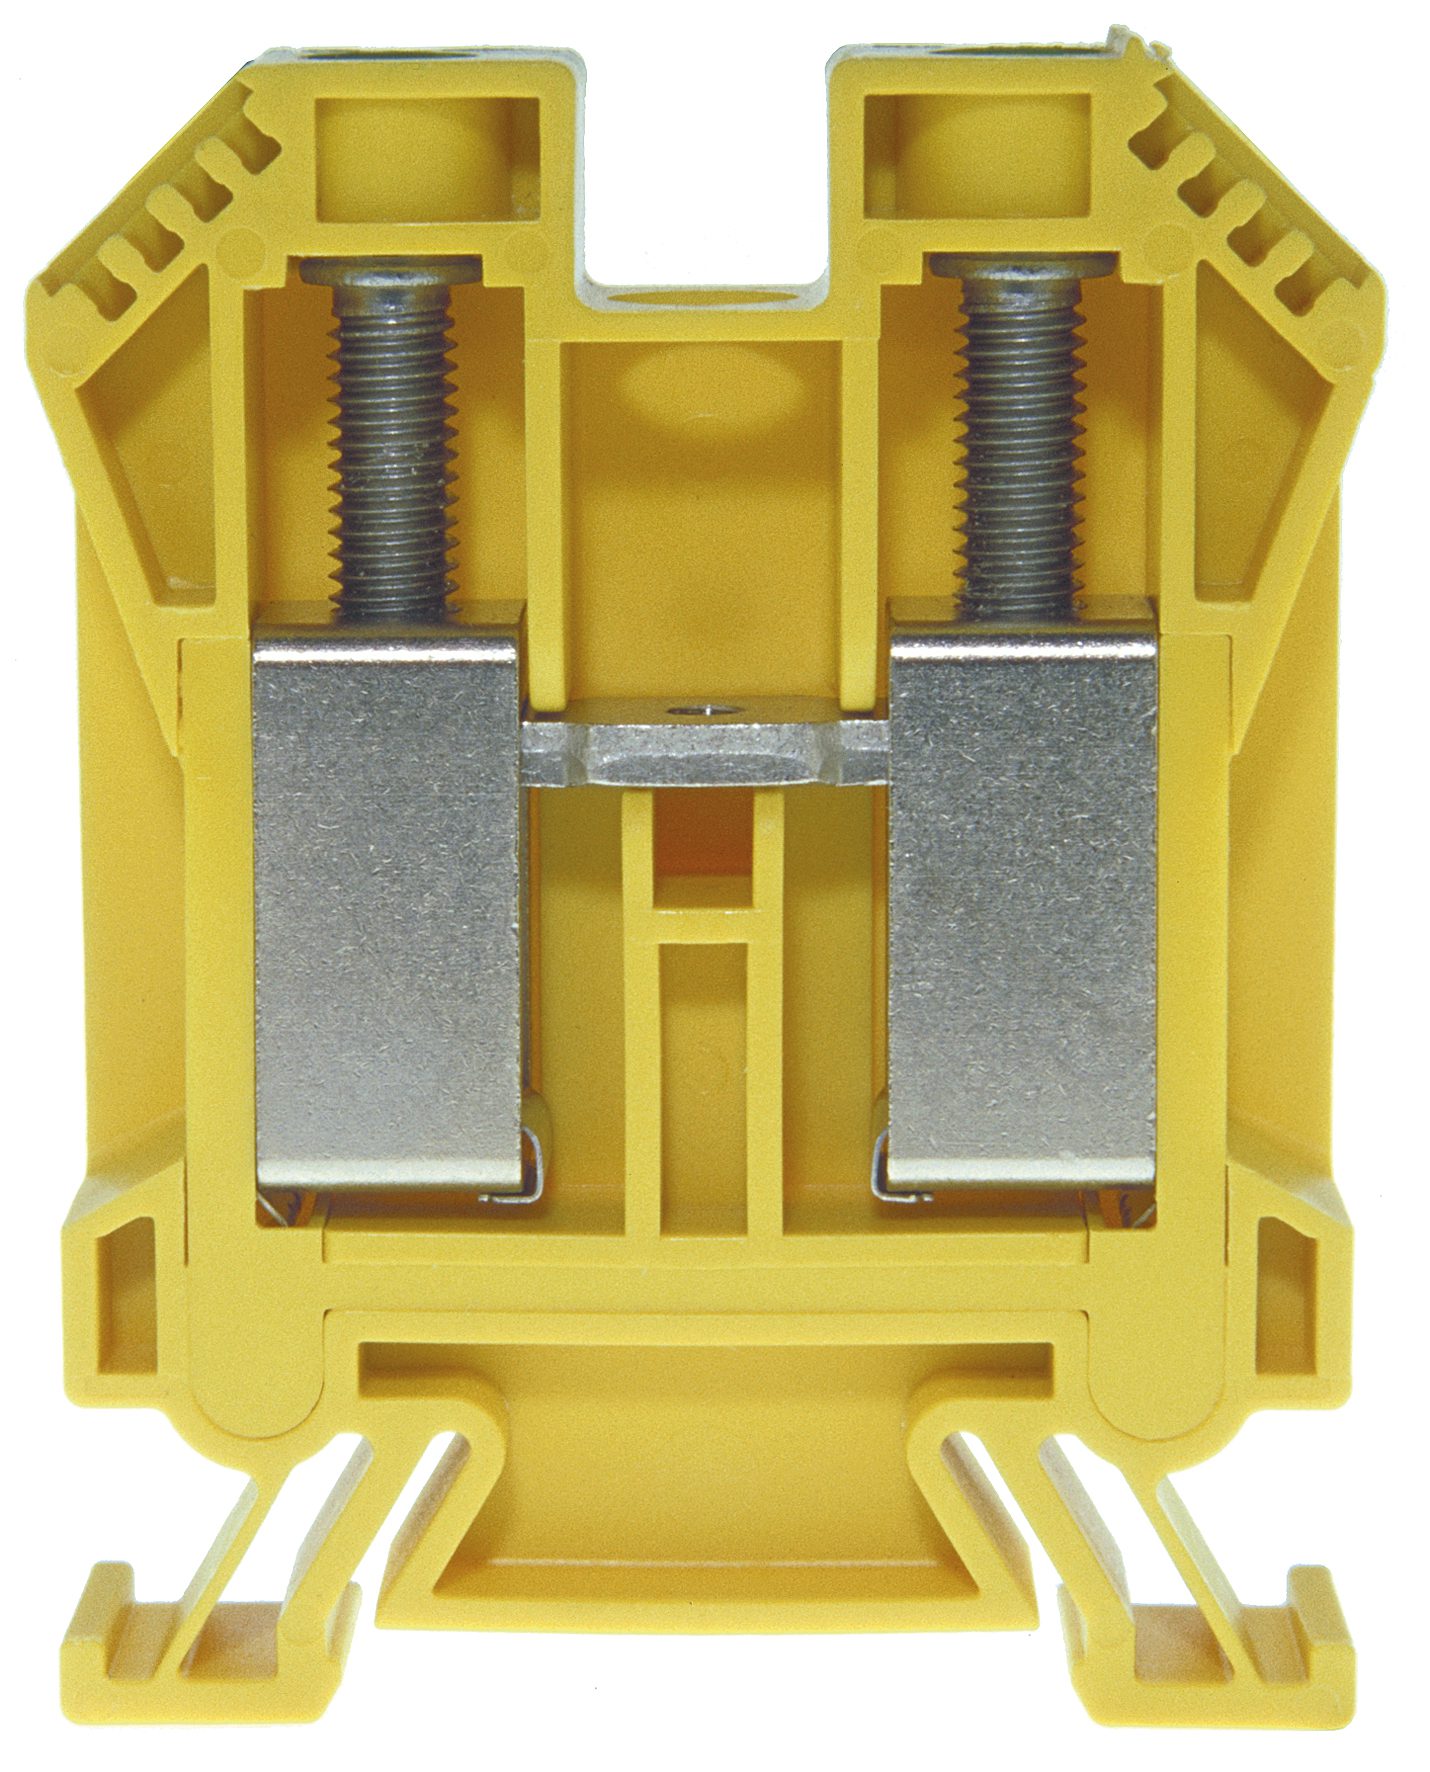 Bloc de jonction DIN35 50mm² isolé vert et jaune